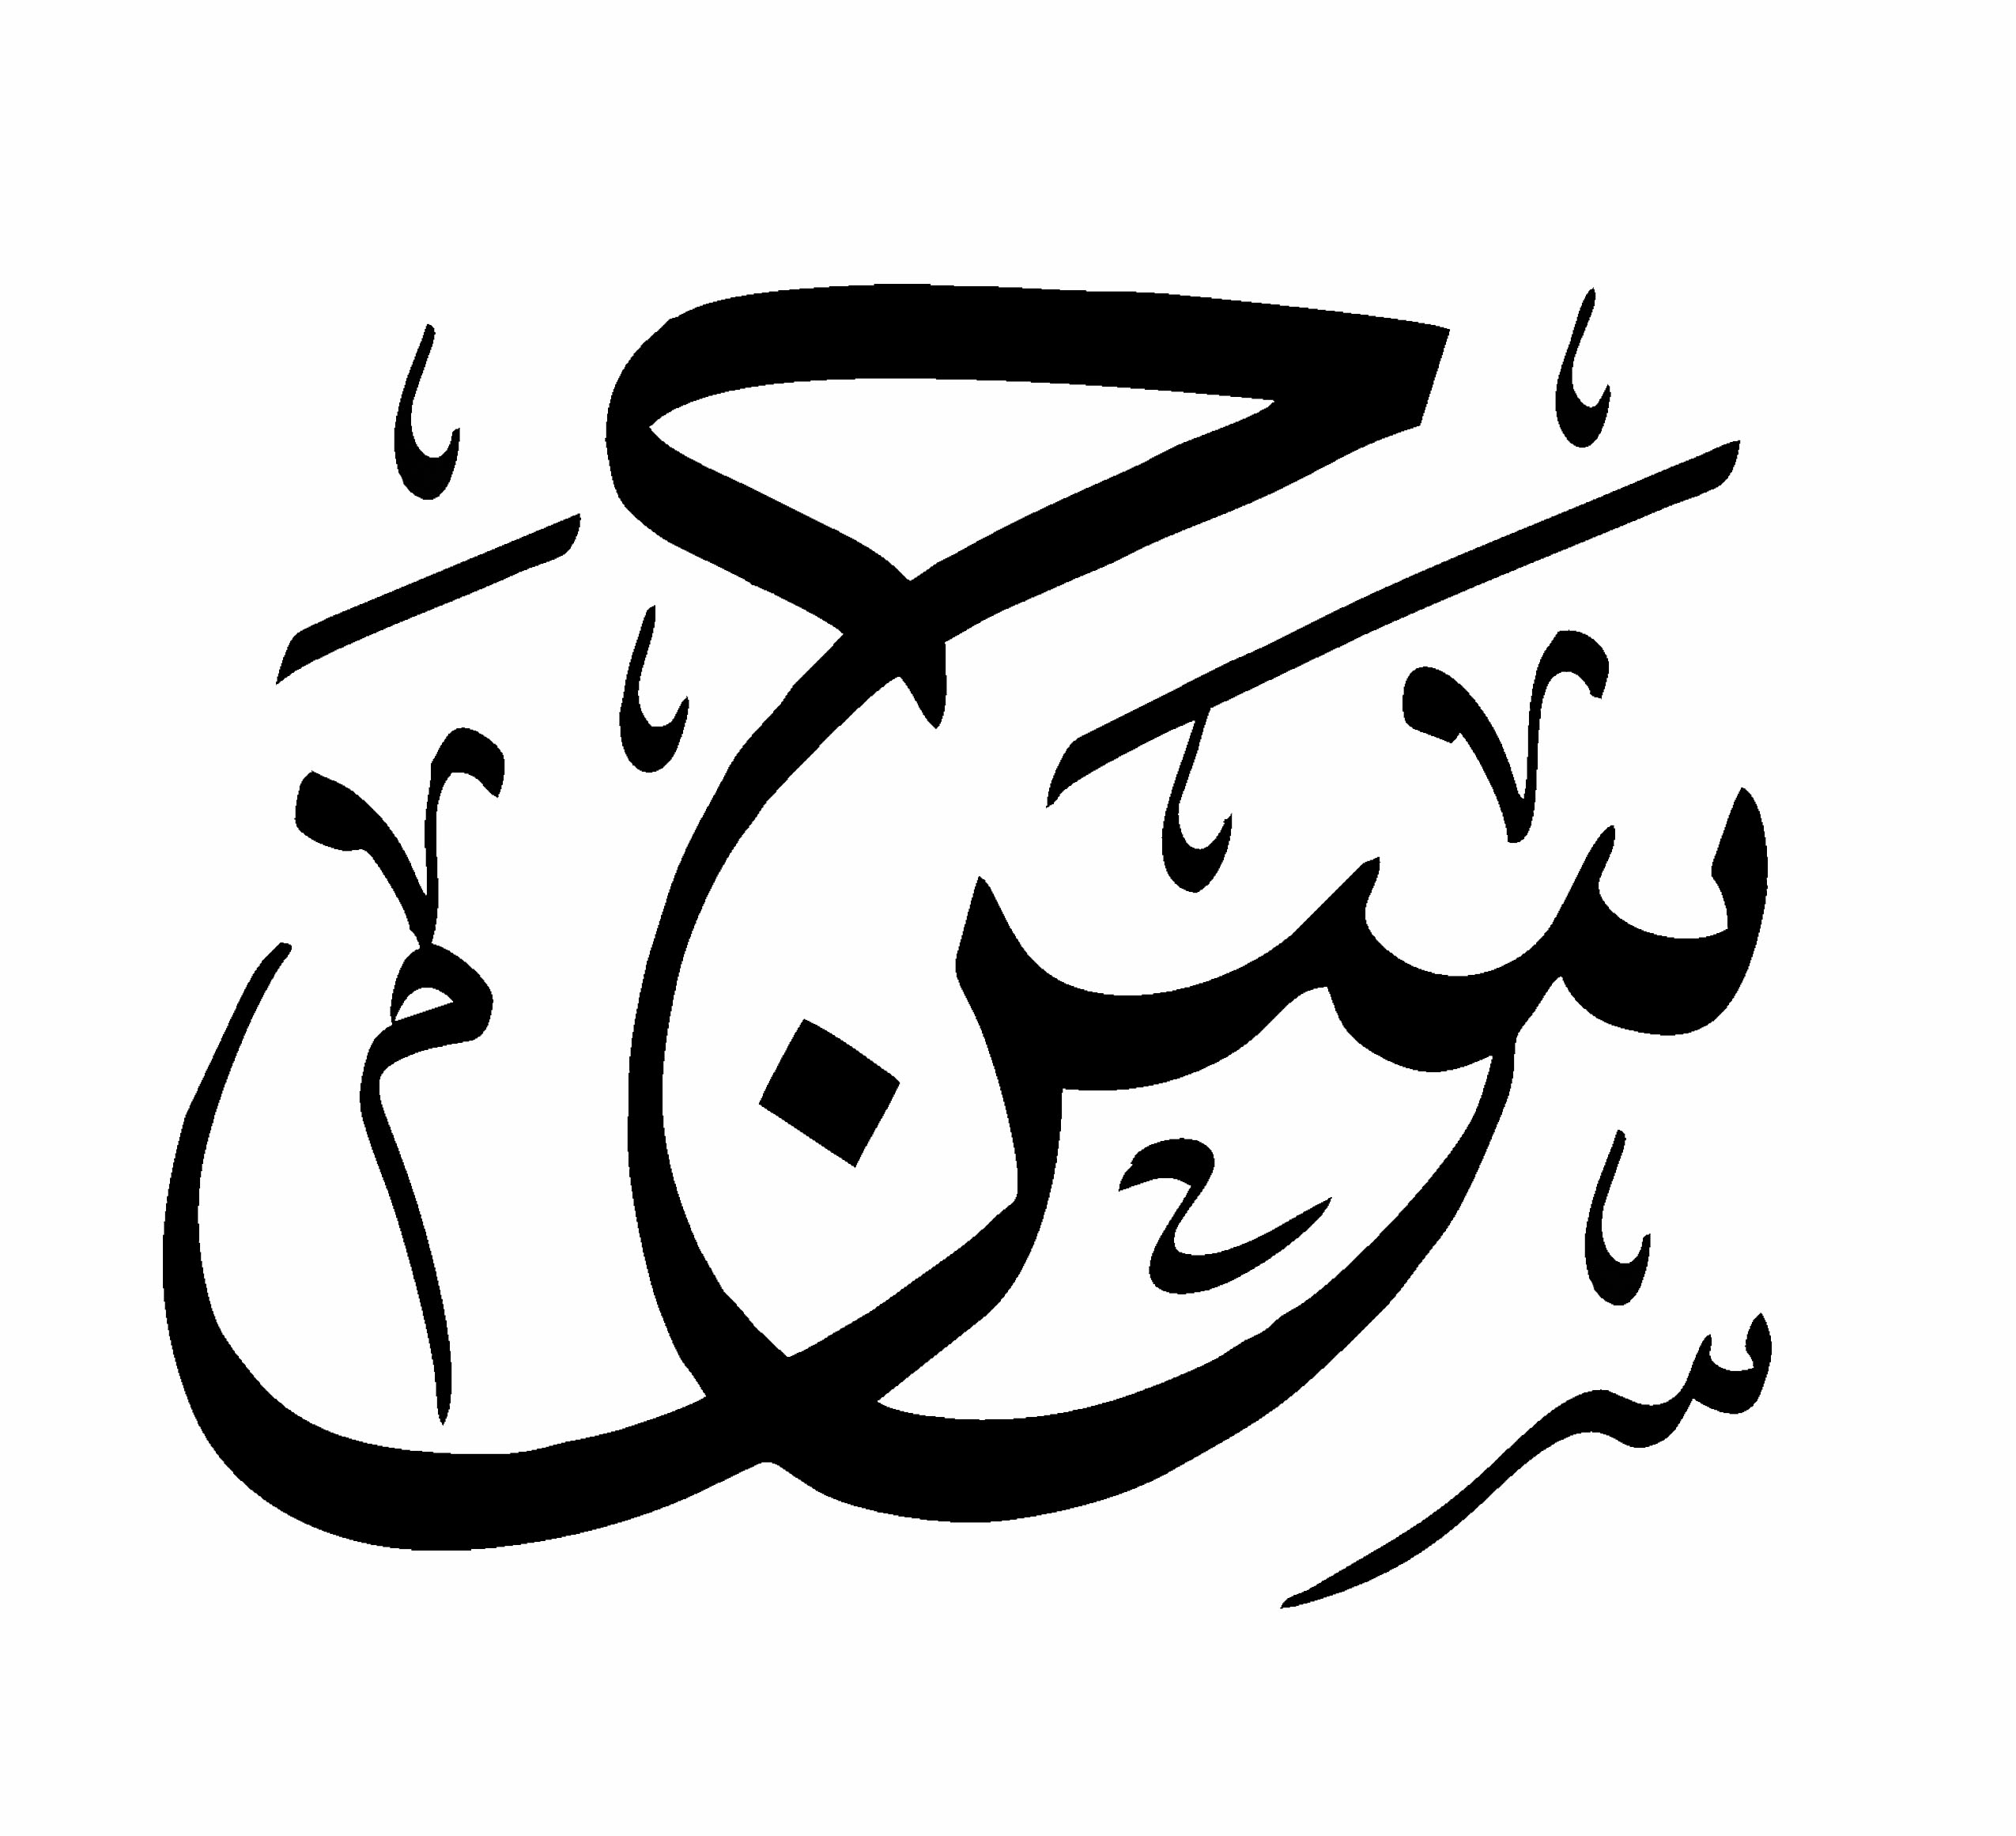 اسم حسن أبو عفش بأقلام الخطاطين هبة ستوديو